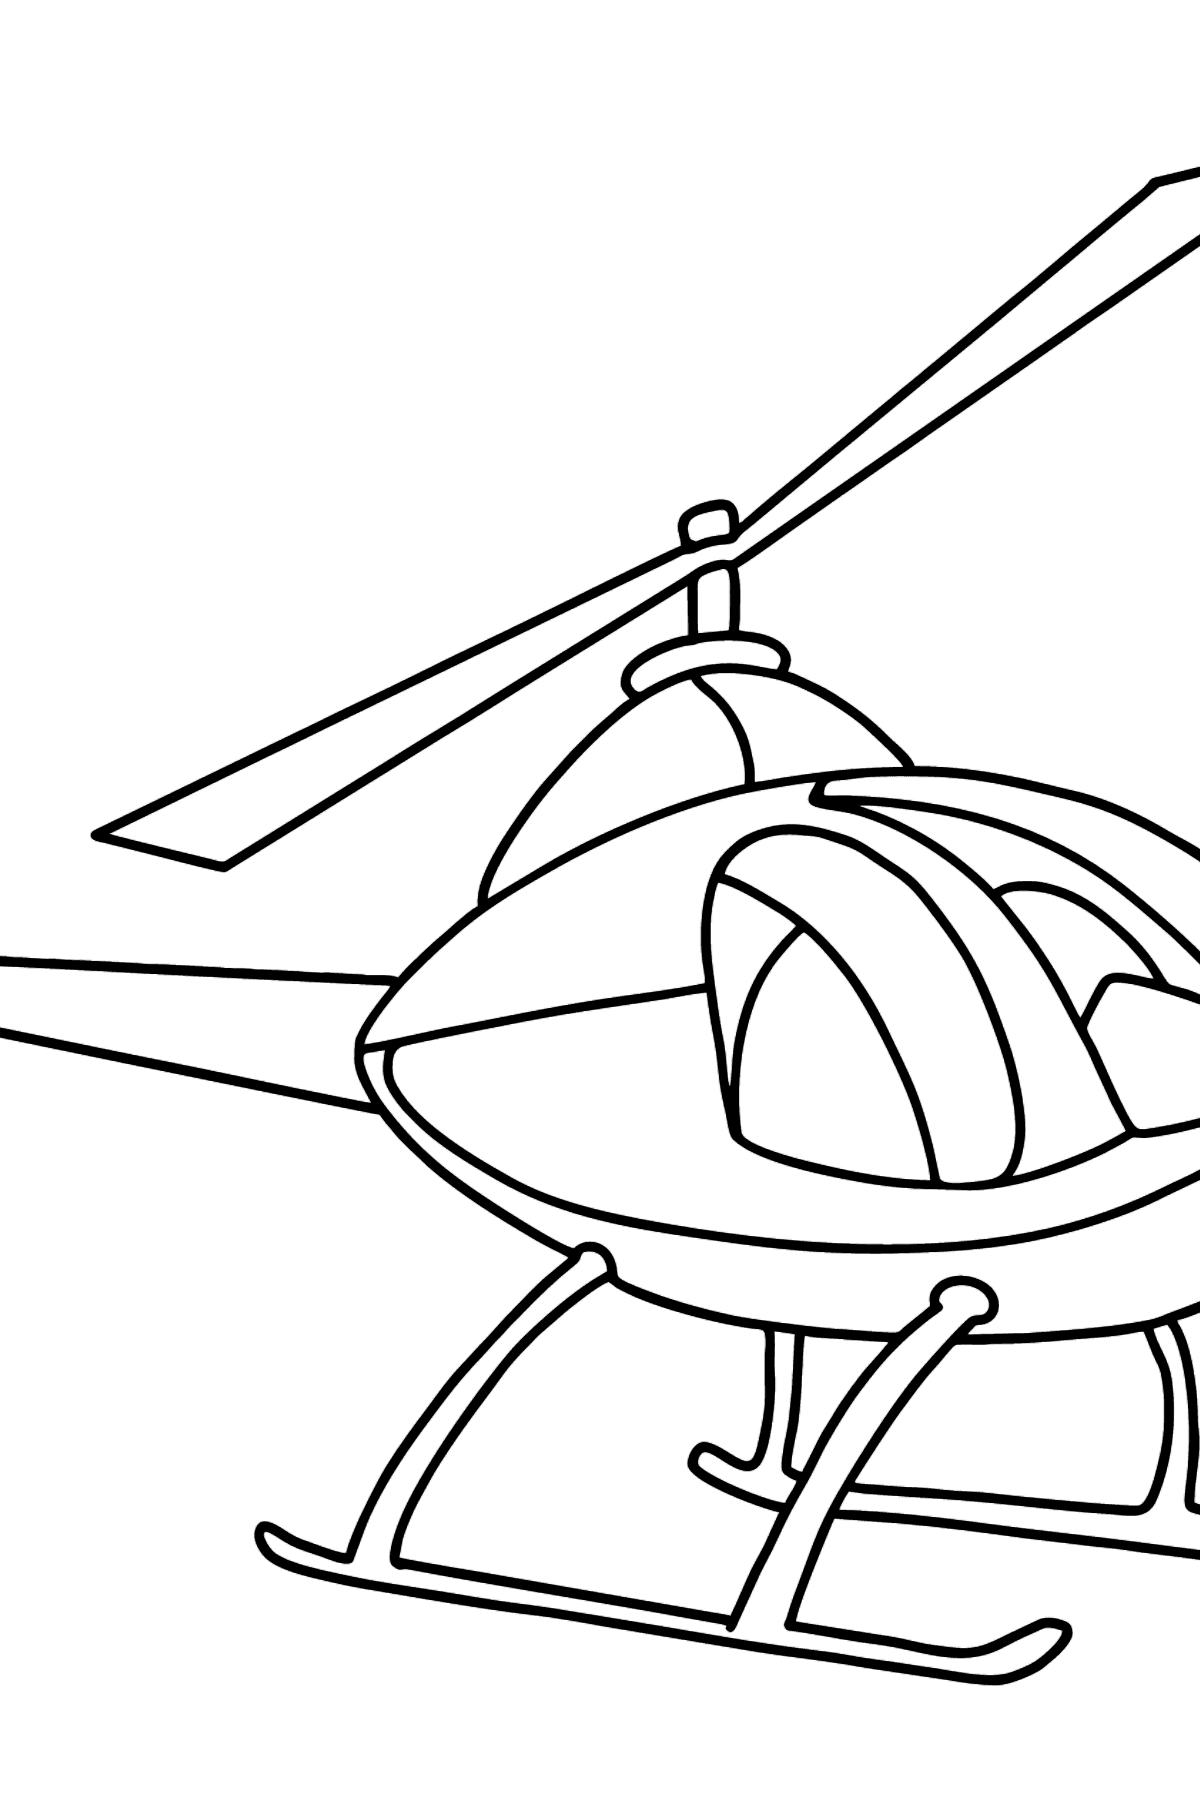 Página para colorear de helicópteros para niños - Dibujos para Colorear para Niños